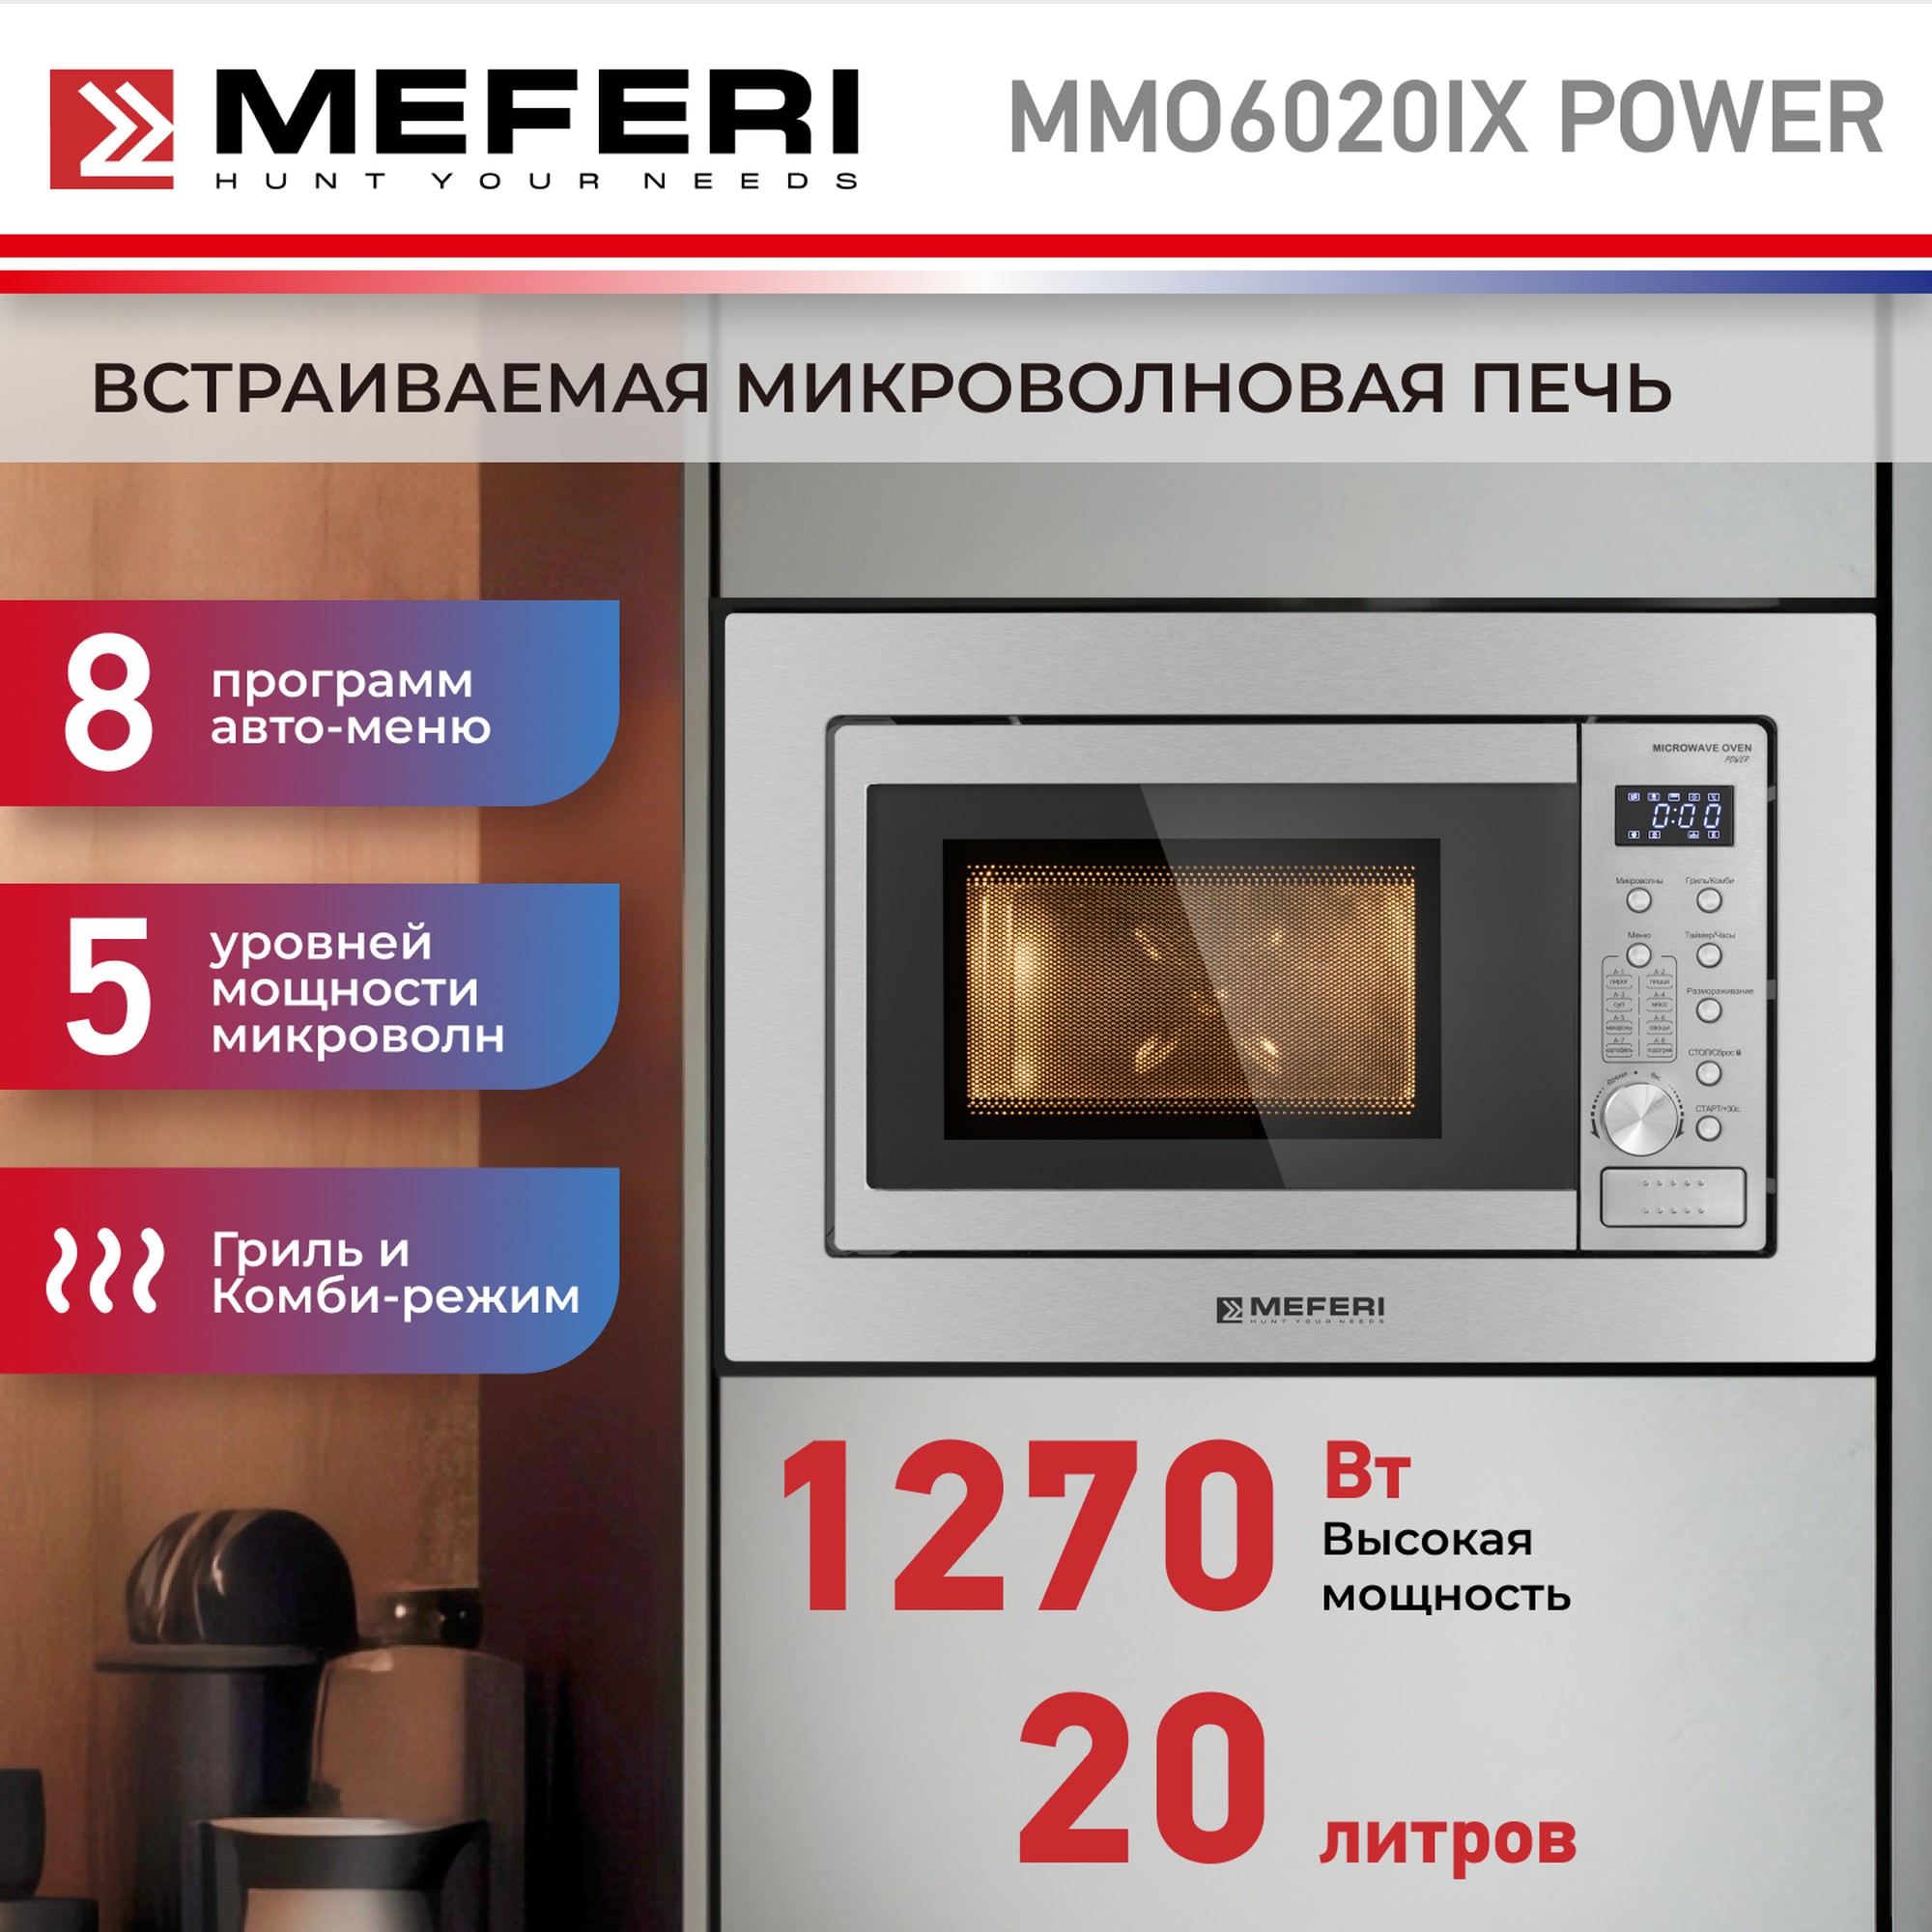 Встраиваемая микроволновая печь MEFERI MMO6020IX POWER встраиваемая микроволновая печь meferi mmo6020bk power